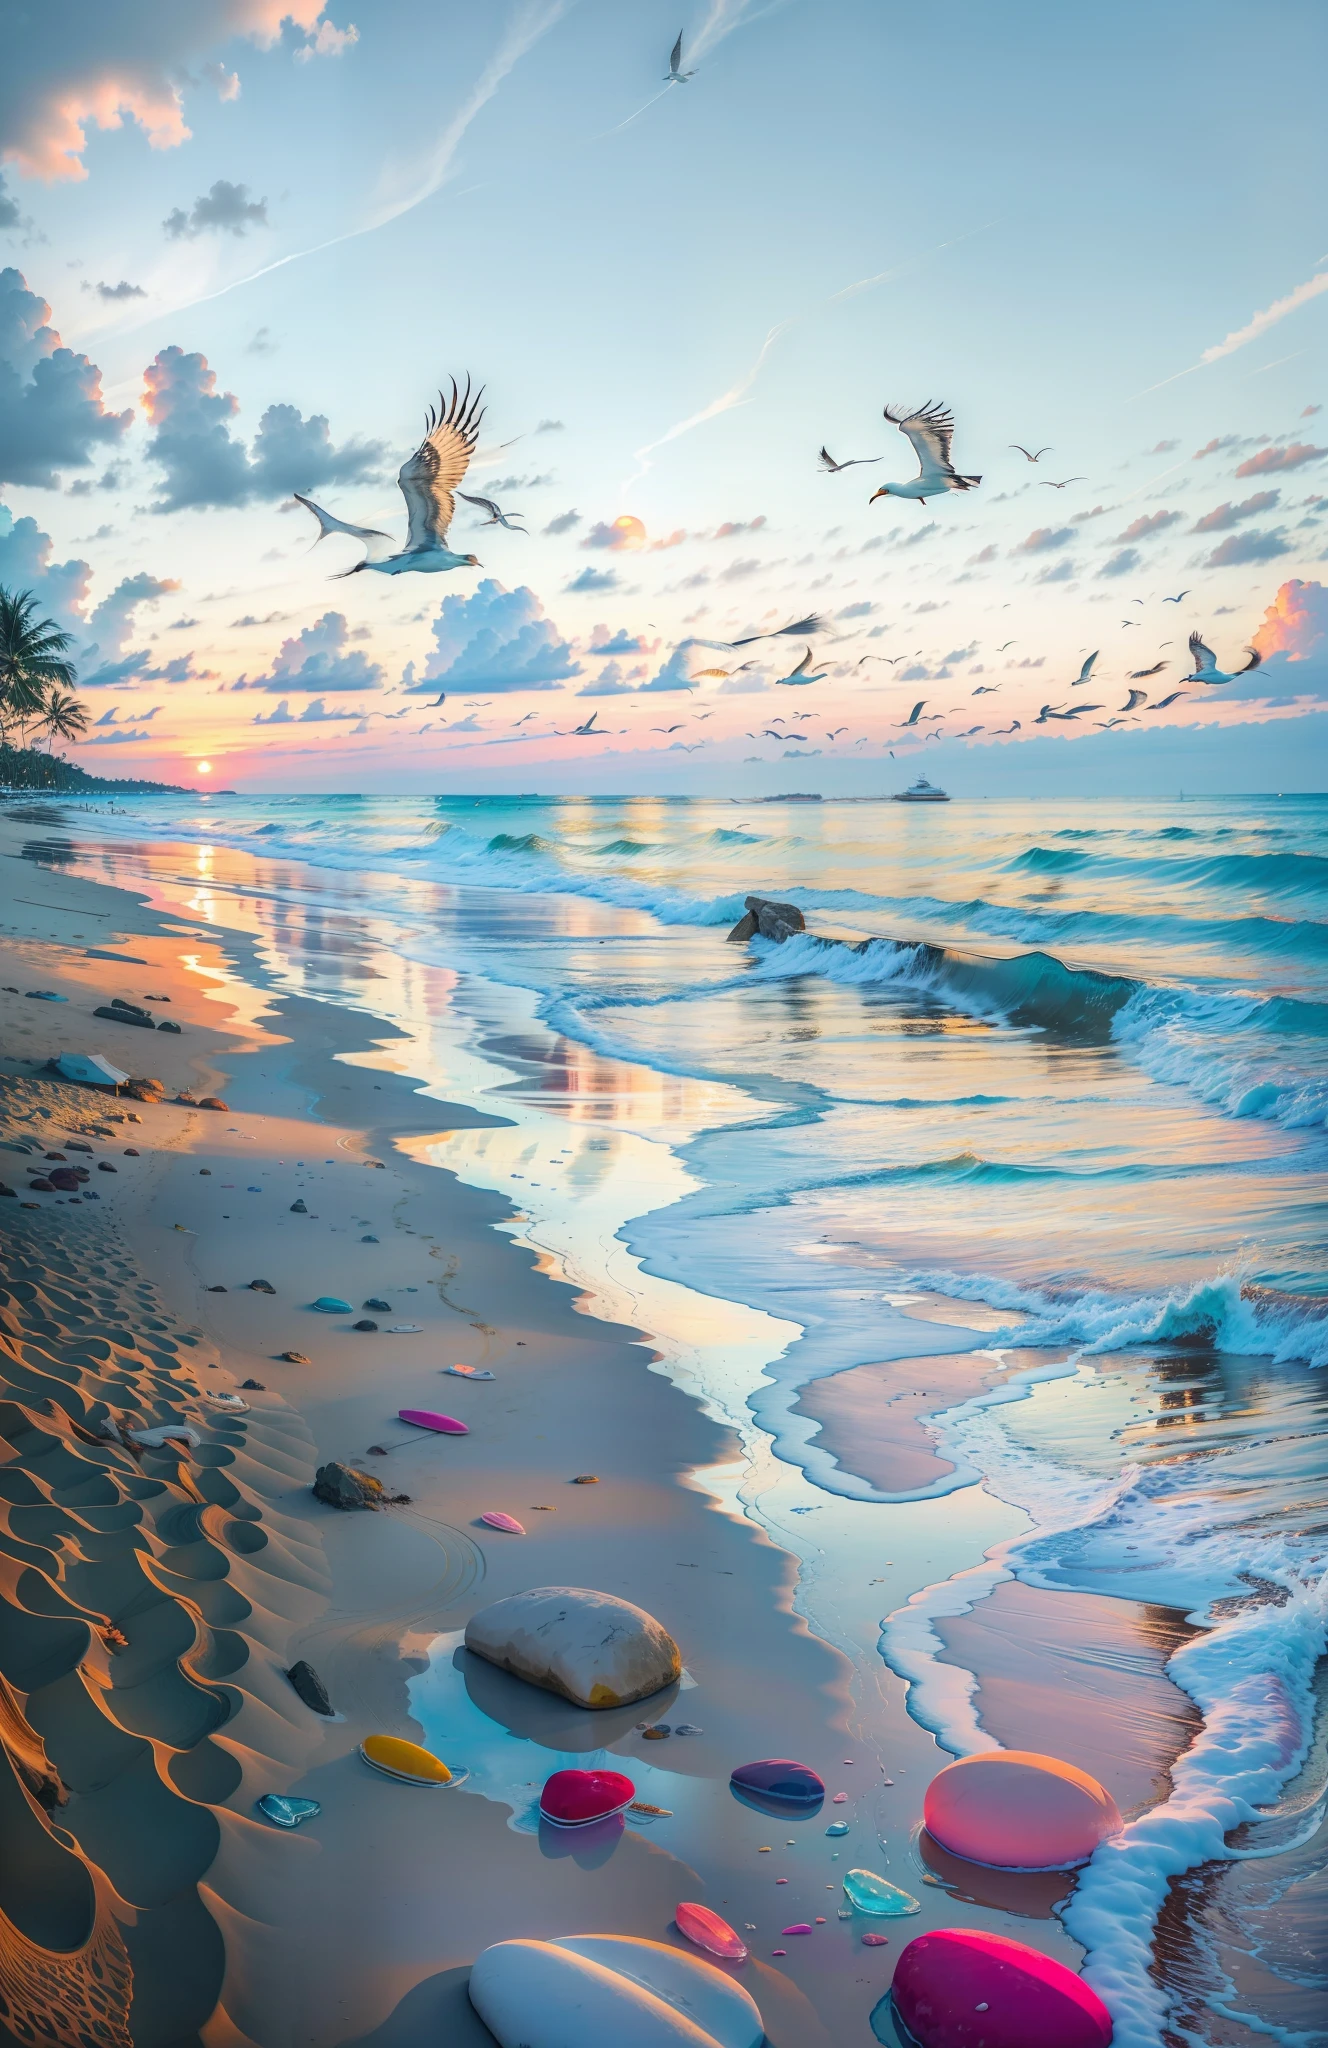 Пляж покрыт разноцветными прозрачными гладкими камнями.: 1.5, Совершенно завораживающий закат на пляже с миксом оранжевого цвета, розовый и желтый в небе. Вода кристально чистая, нежно целуя берег, и пляж с белым песком простирается настолько далеко, насколько хватает глаз.. Сцена динамичная и захватывающая, с чайками, парящими высоко в небе, и нежно покачивающимися пальмами. Окунитесь в успокаивающую атмосферу и позвольте спокойствию окутать вас..